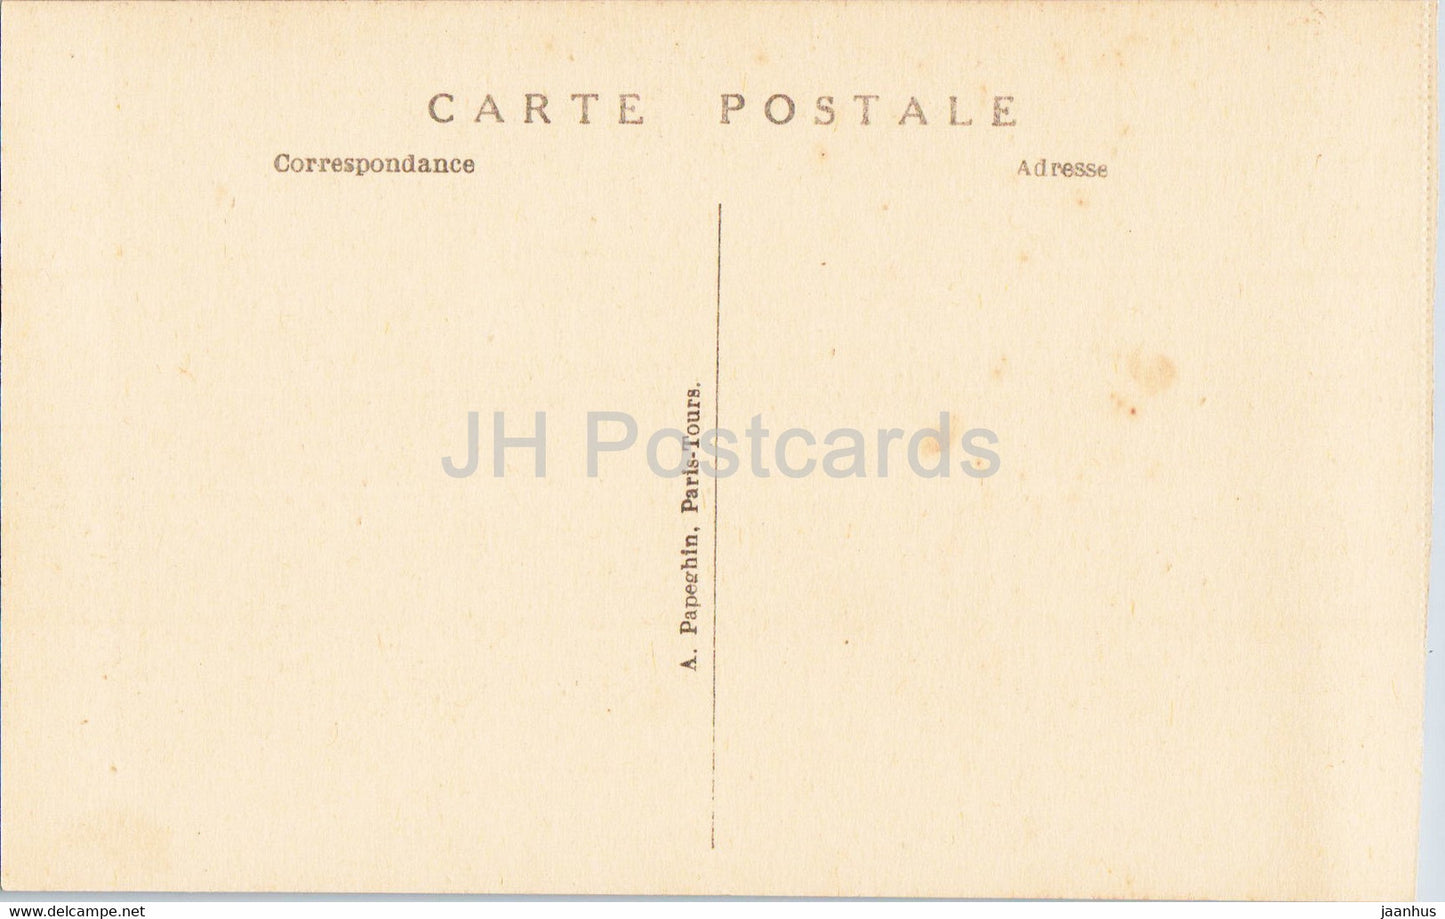 Versailles - Le Chateau - La Galerie des Batailles - 51 - Battle Gallery - old postcard - France - unused